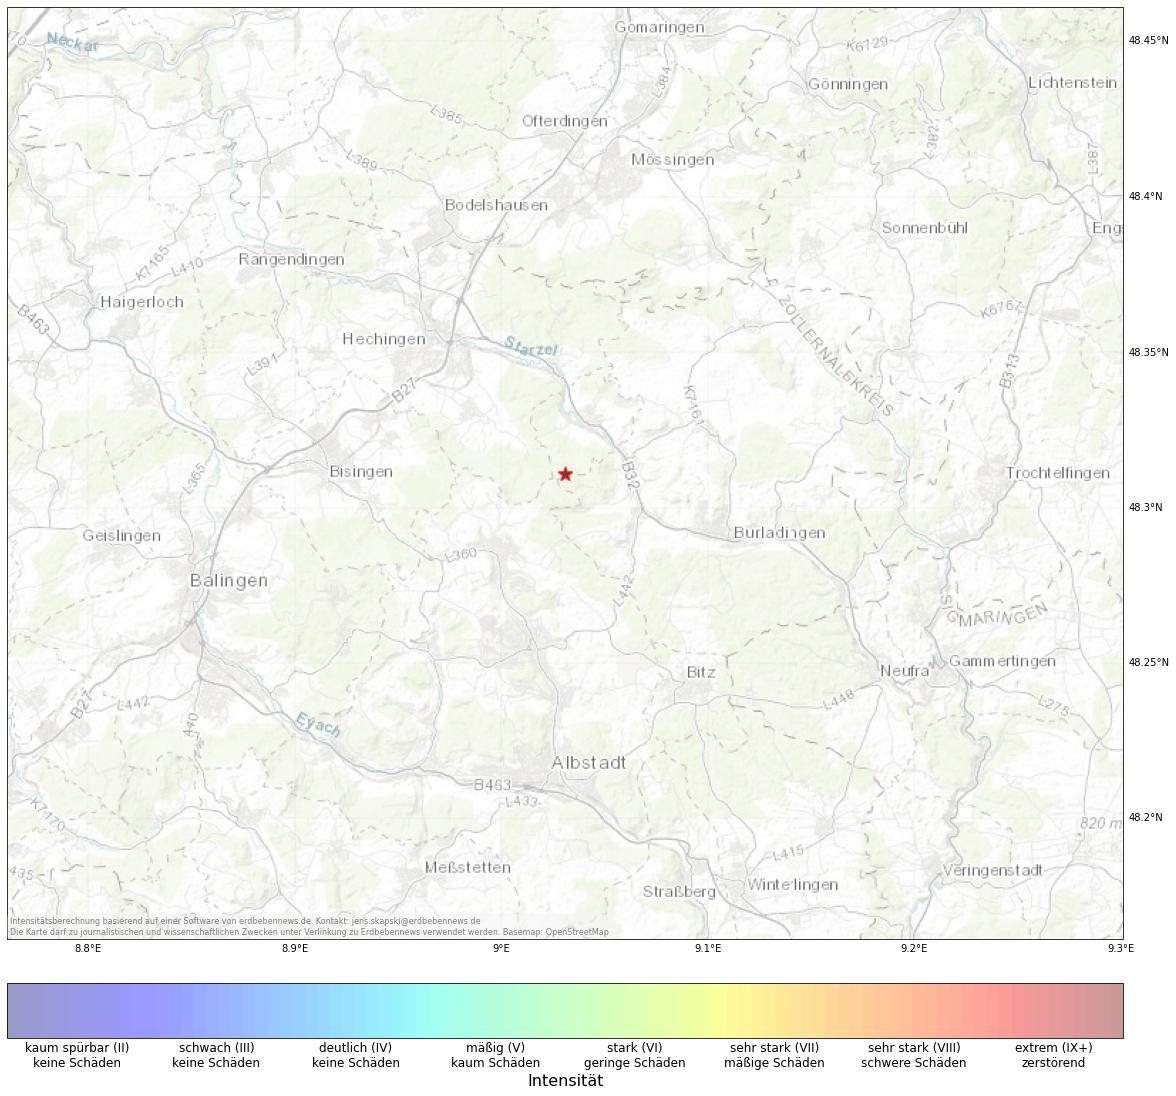 Berechnete Intensität (ShakeMap) des Erdbebens der Stärke 1.5 am 13. Oktober, 3:49 Uhr in Deutschland